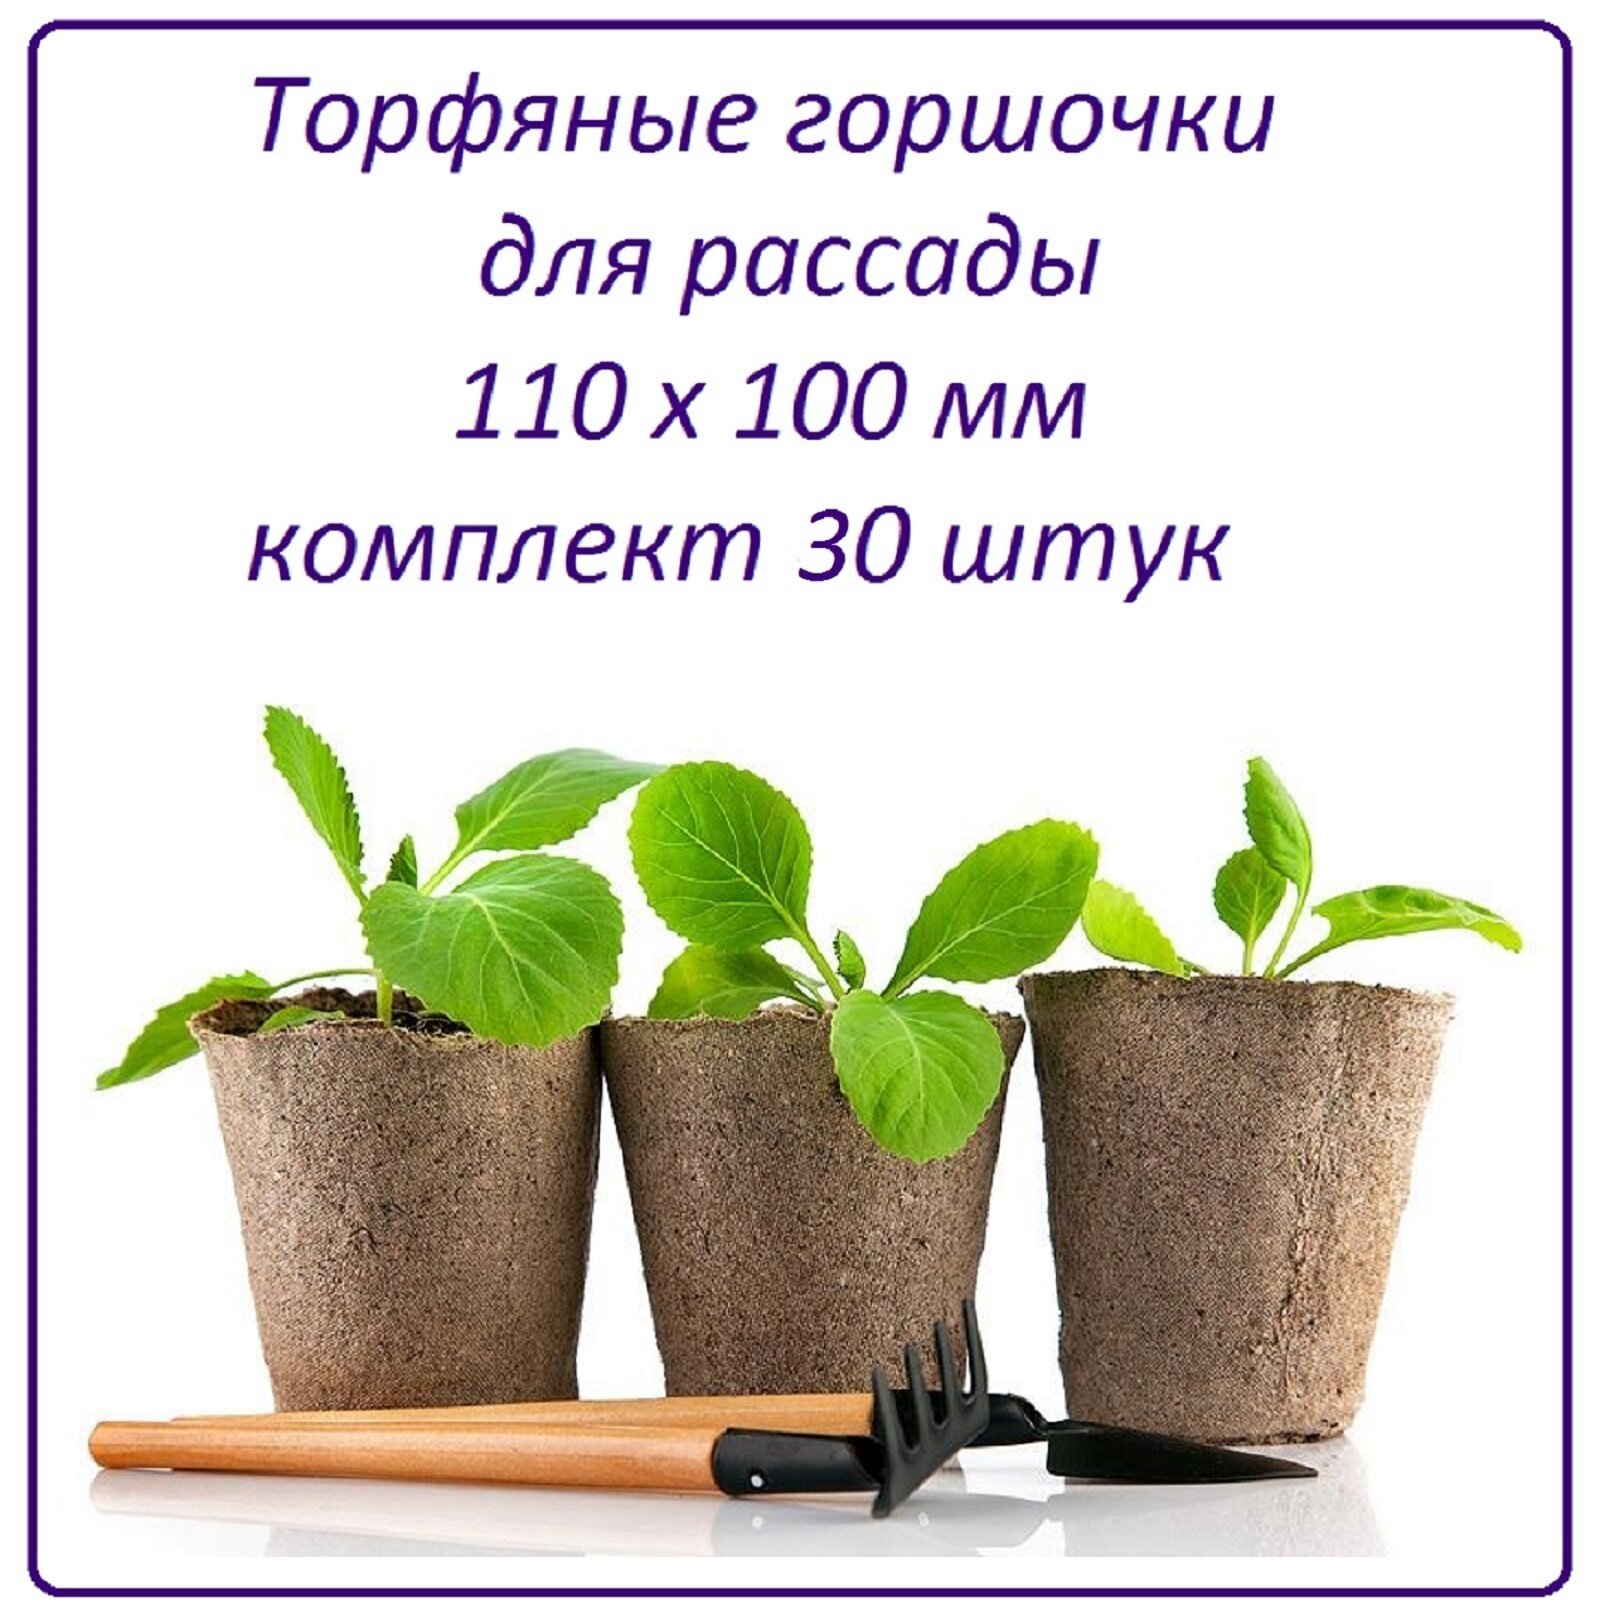 Торфяной горшочек 40 штук 110 х 100 мм набор для рассады всех видов комнатных и садовых растений